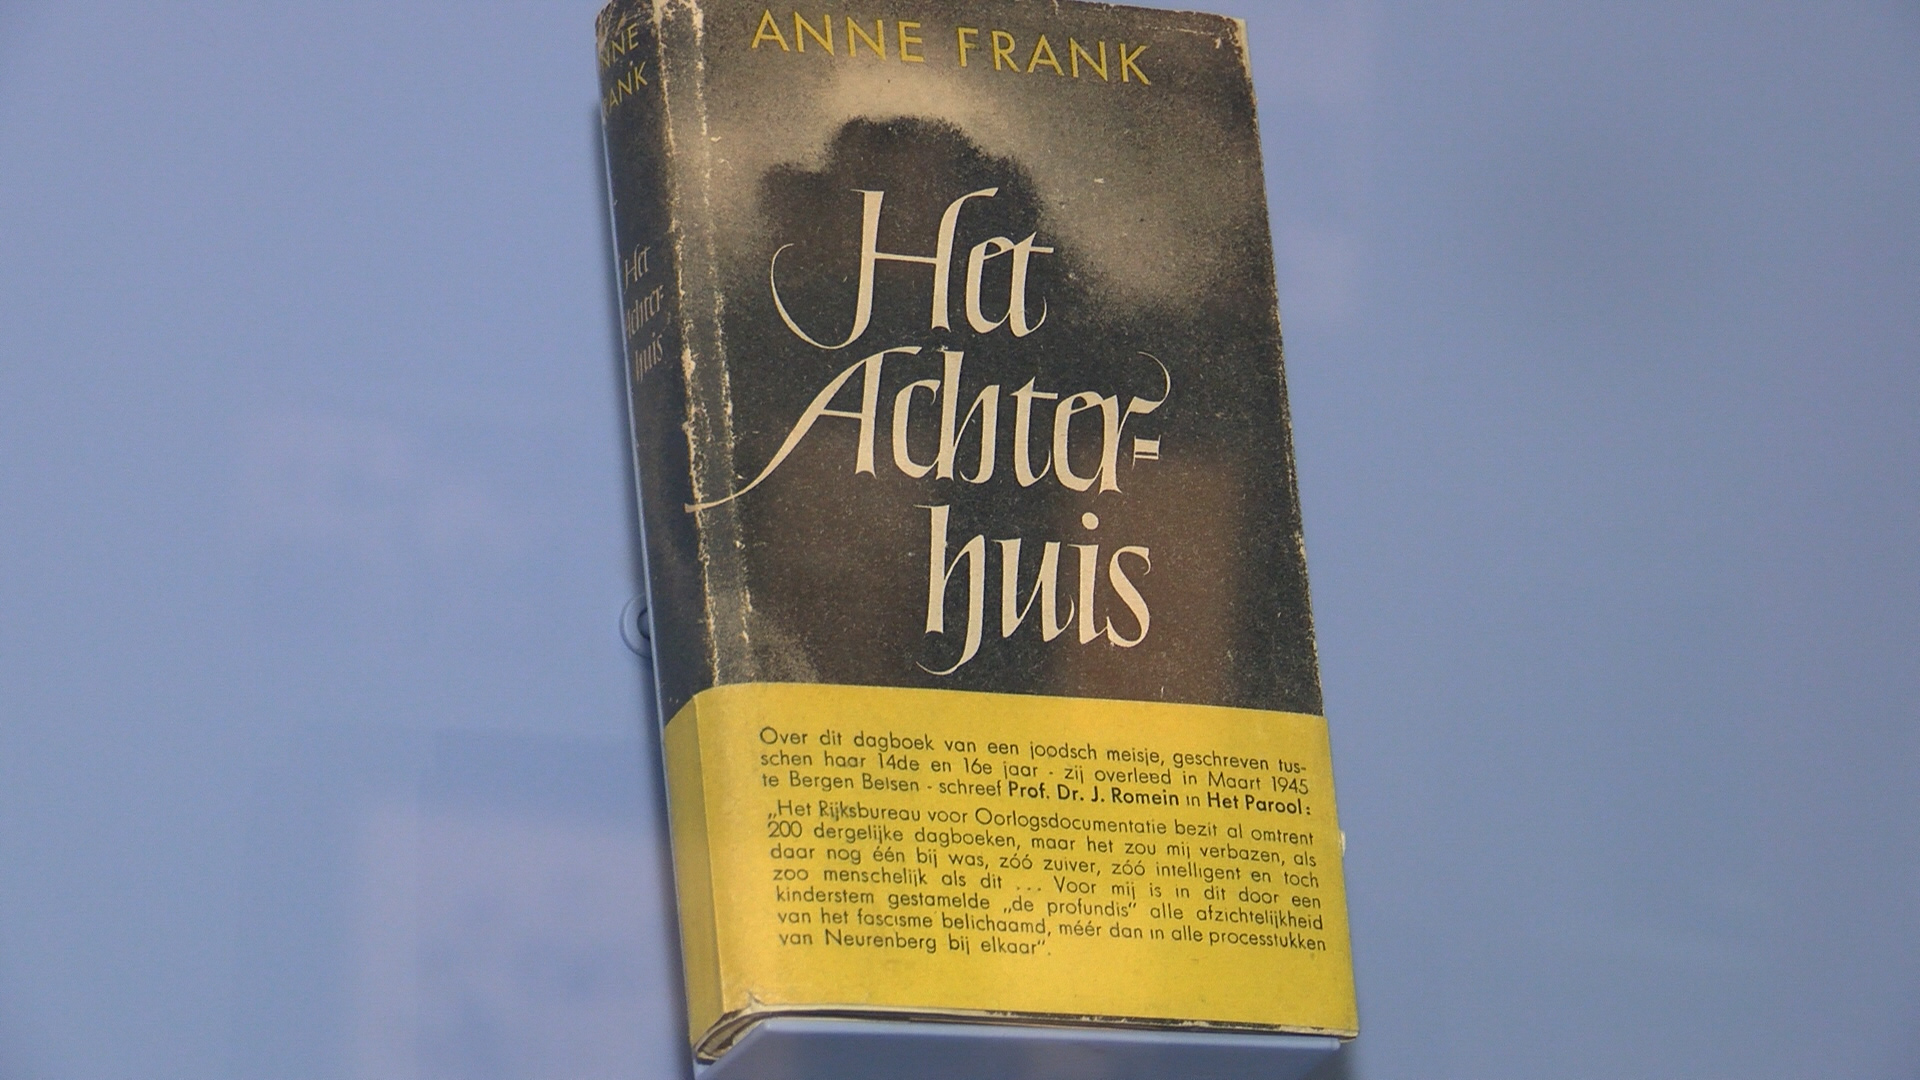 Anne Frank Tag